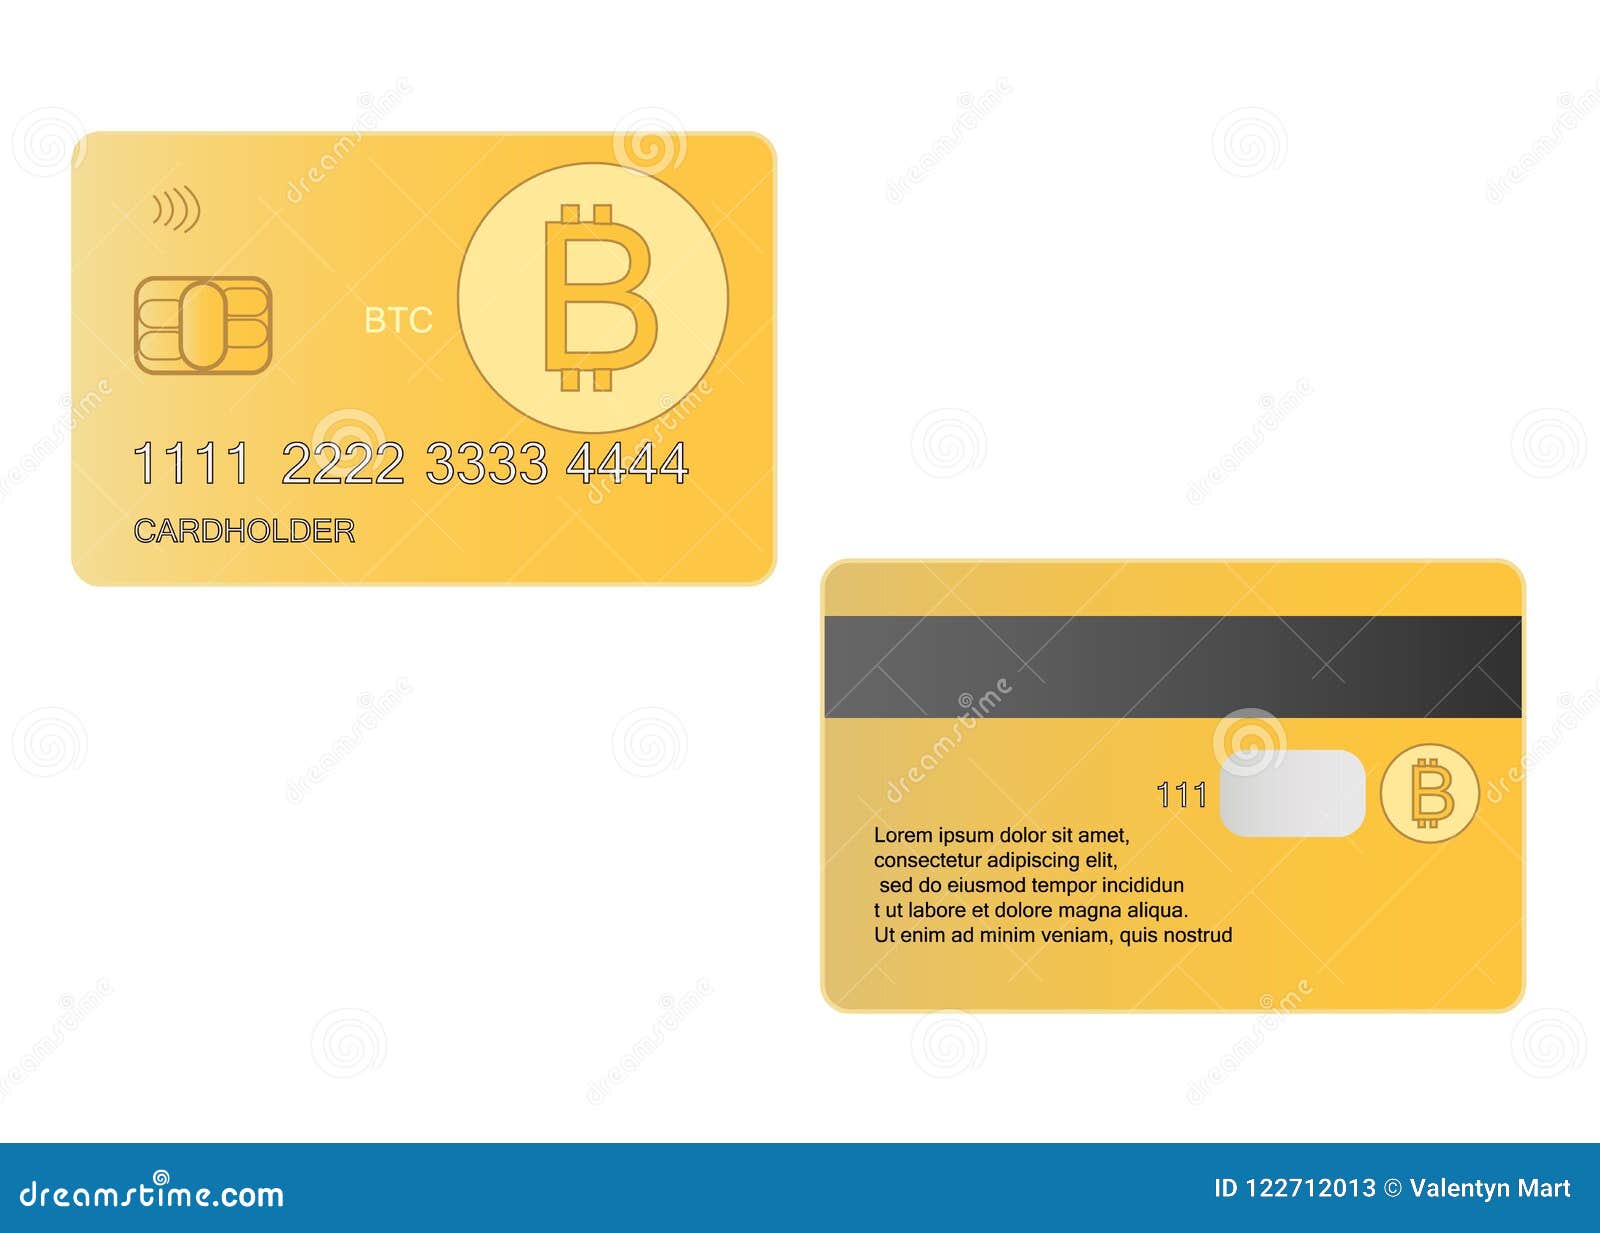 bitcoin bank card)